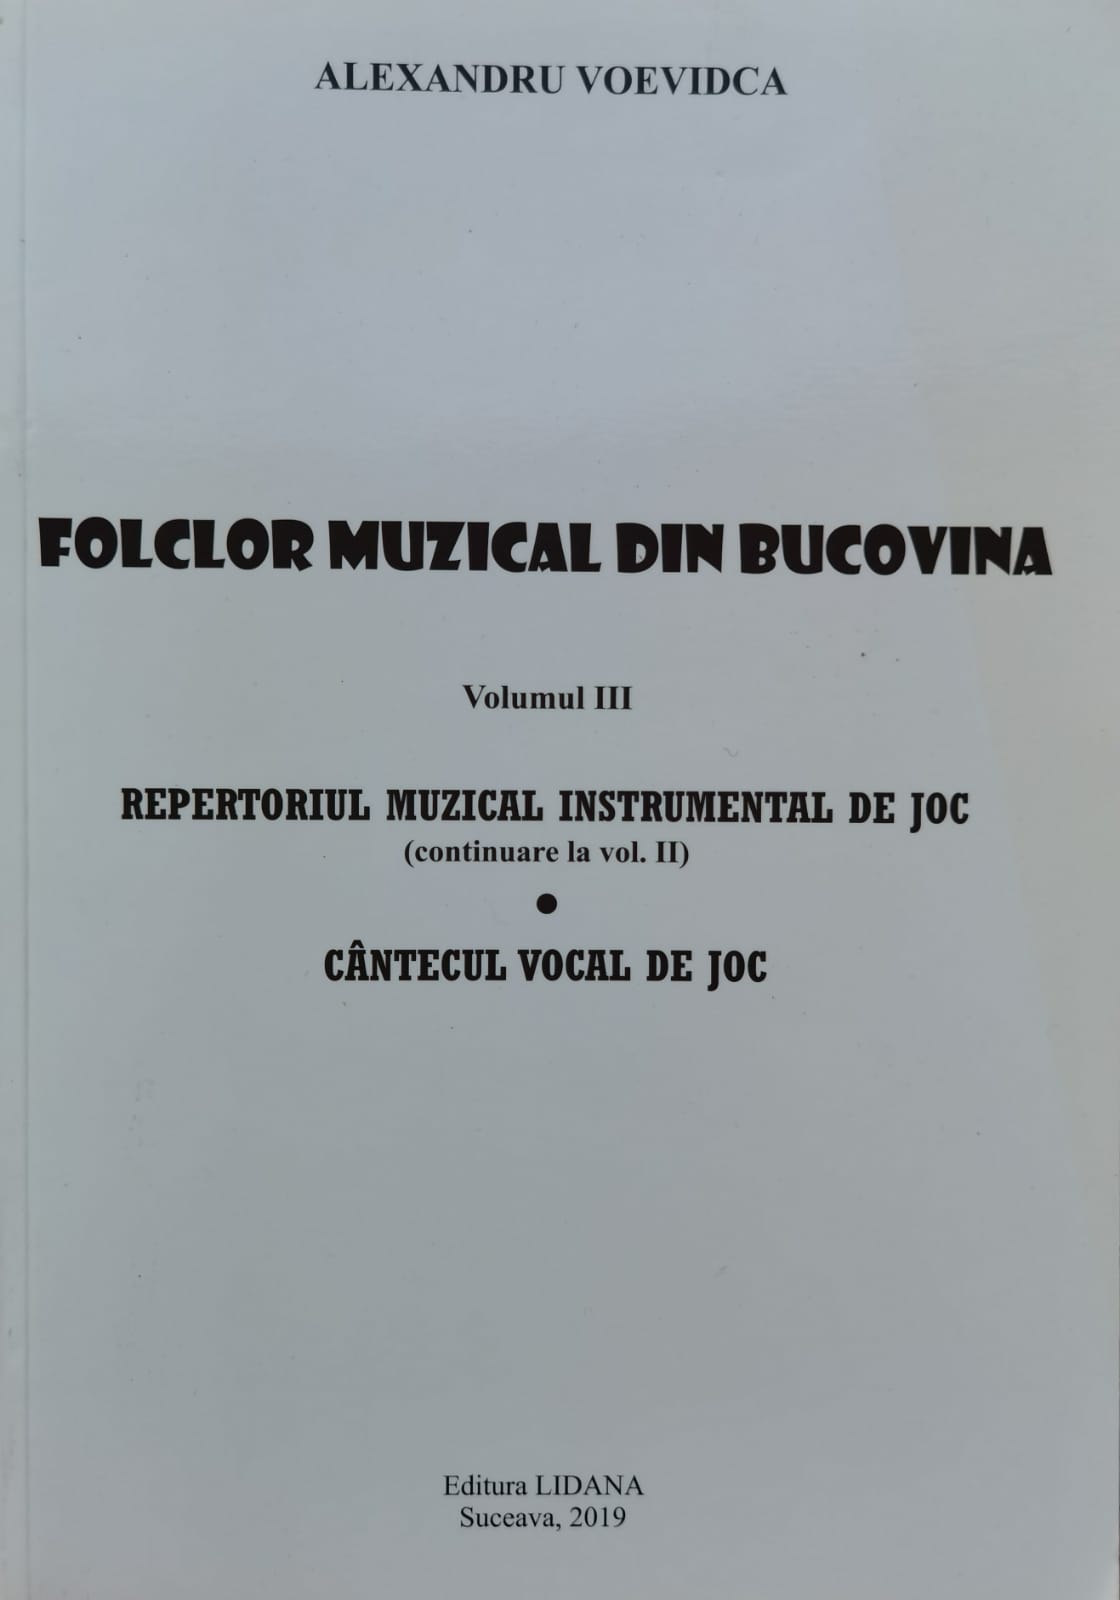 folclor muzical din bucovina vol .3                                                                  alexandru voevidca                                                                                  